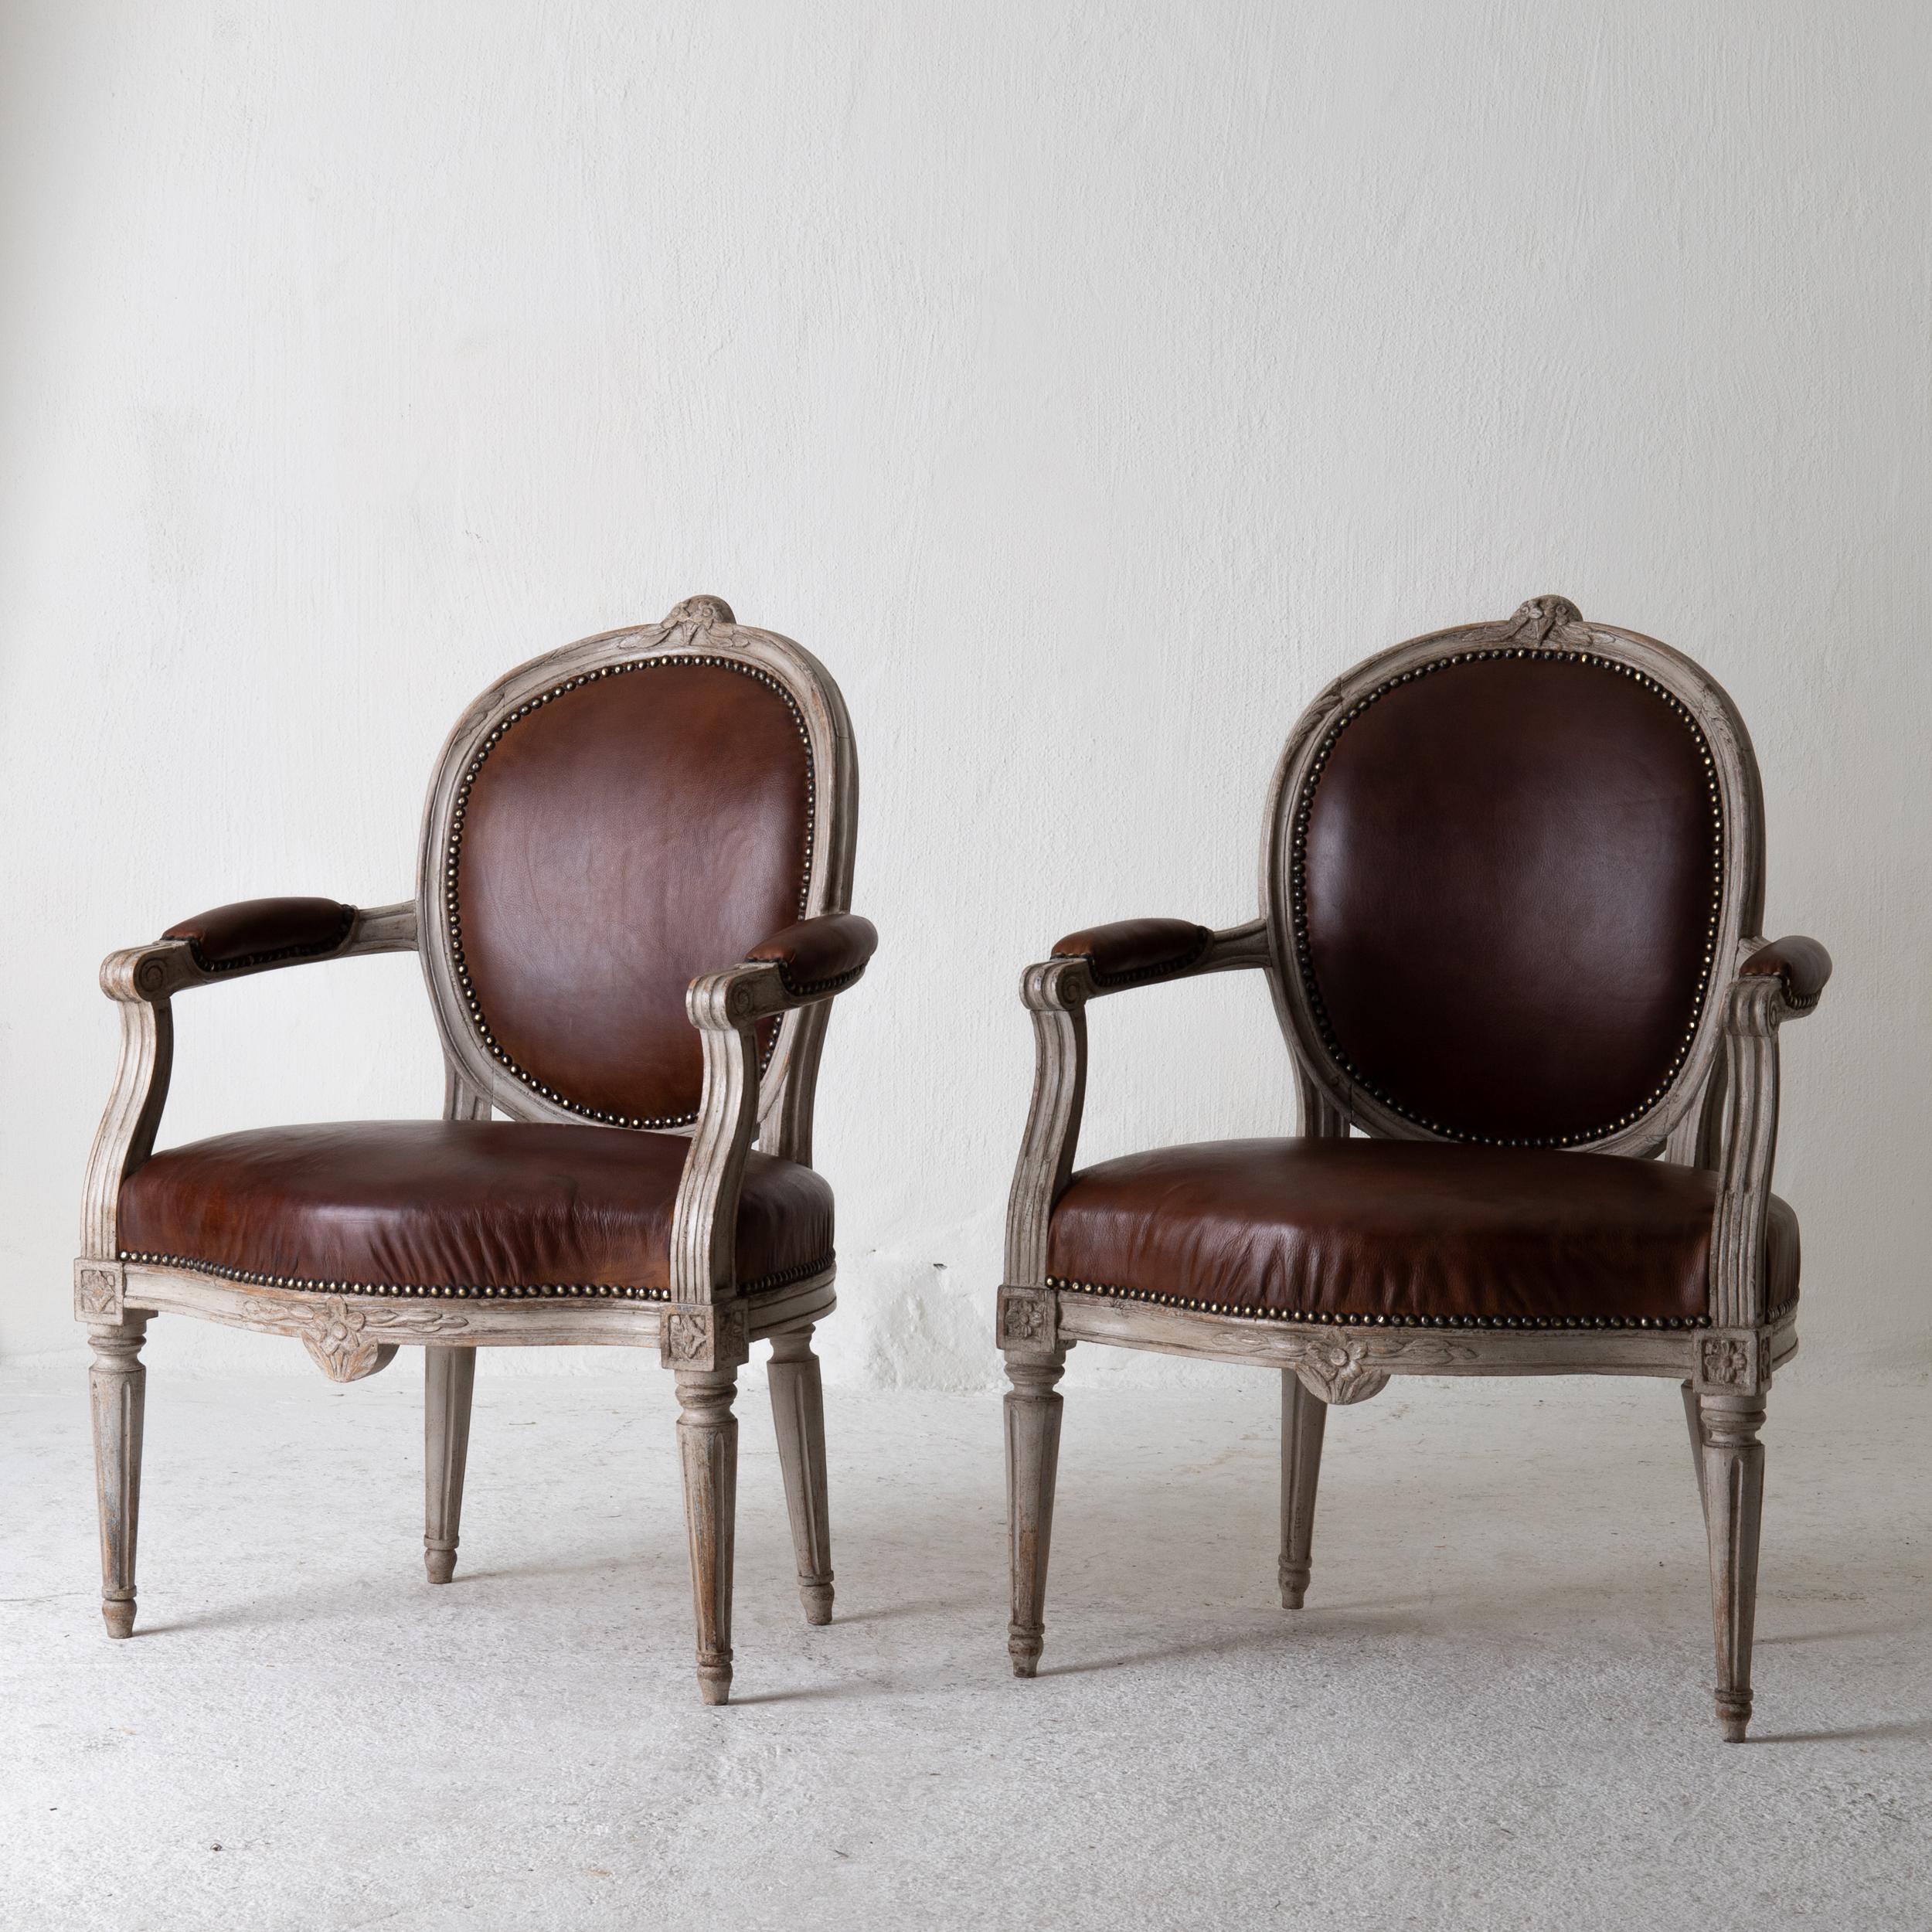 Sessel Gustavian 1780-1800 Schwedisch grau Rahmen braun Leder, Schweden. Ein Paar Sessel aus der frühen Gustavianischen Periode in Schweden 1780-1800. Grau lackiert und auf Sitz, Rücken und Armlehnen mit gewachstem Leder gepolstert. Schöne, für die